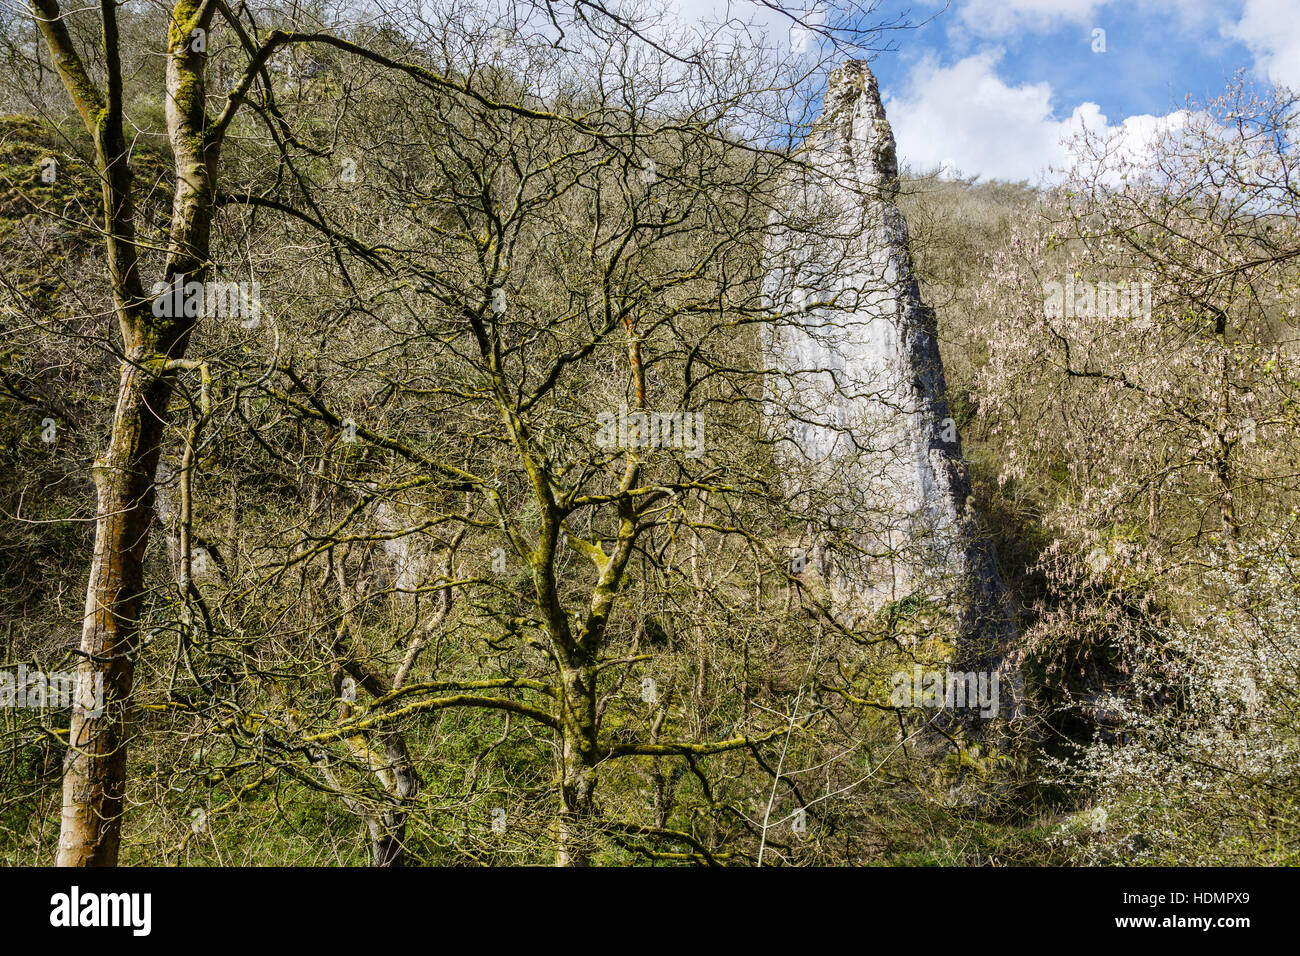 Ilam Rock, Dovedale, Peak District National Park, Derbyshire Stock Photo